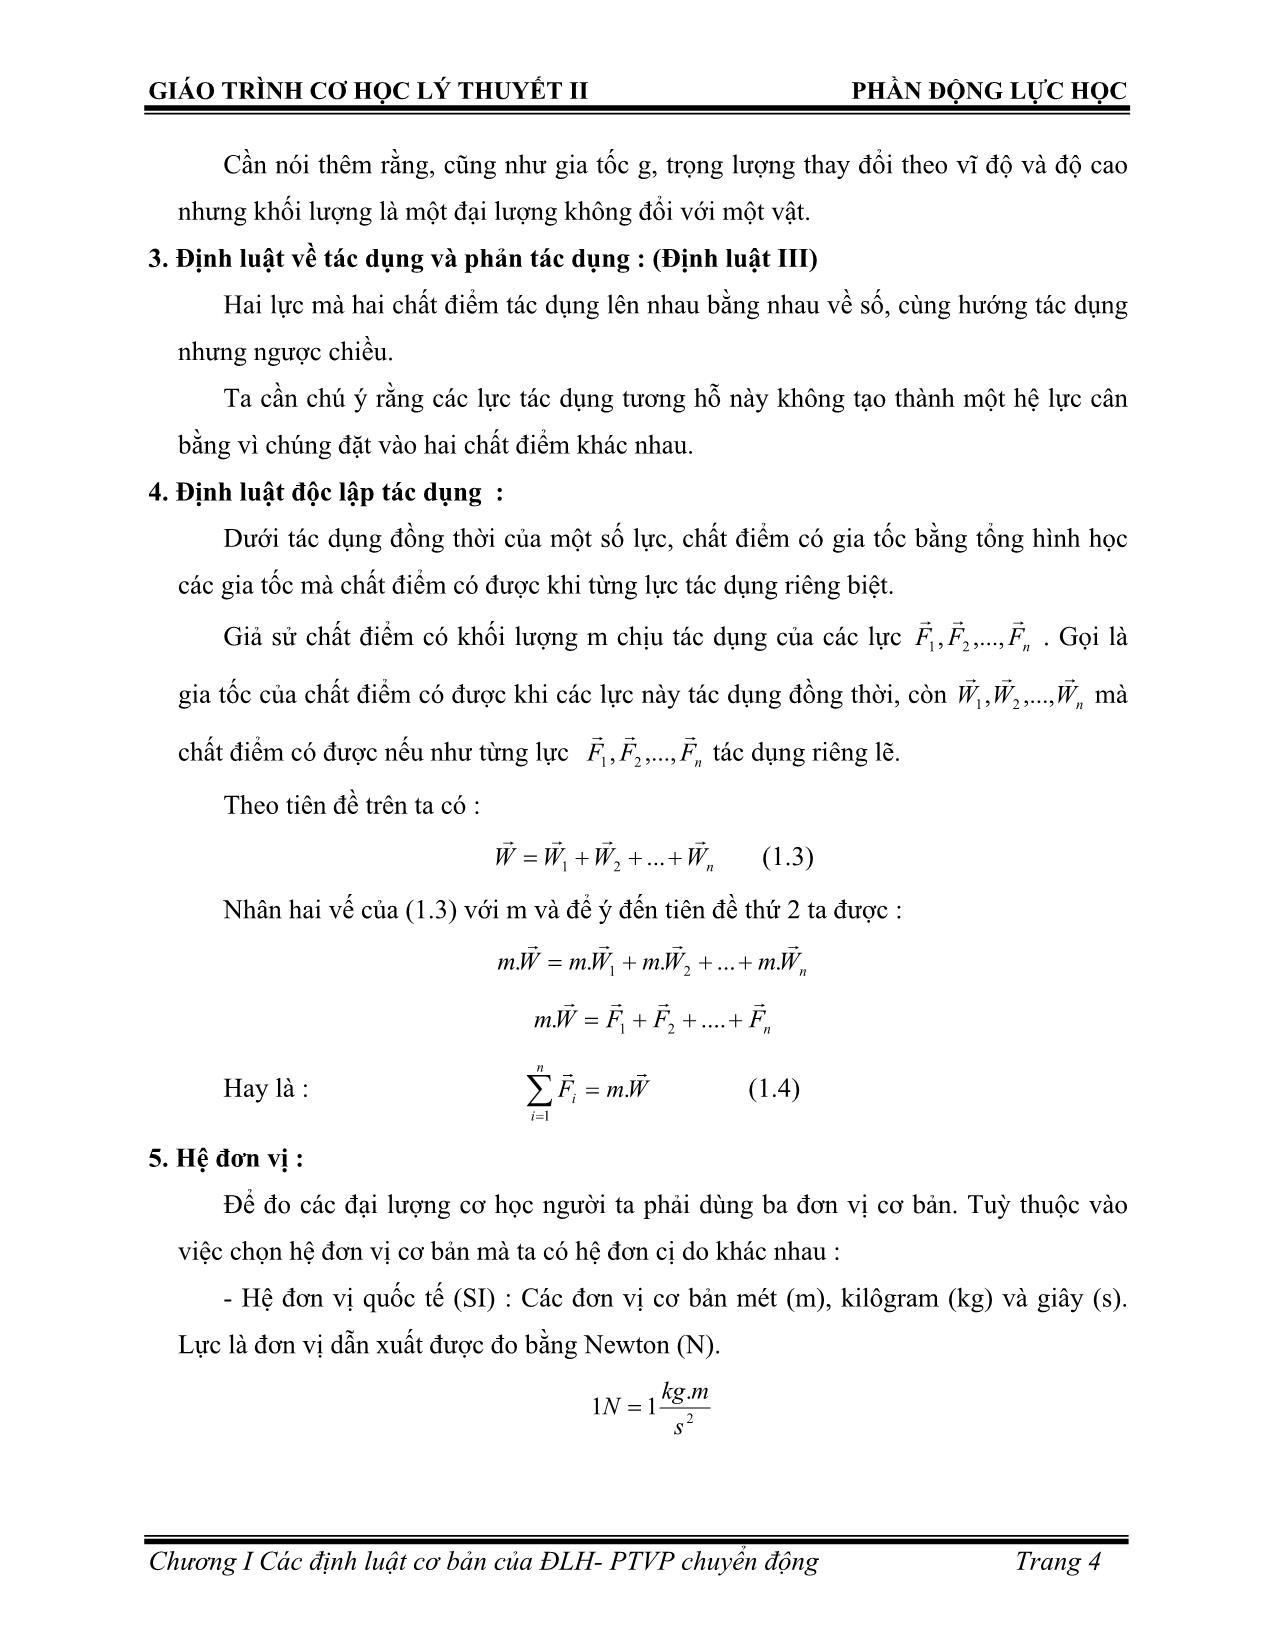 Bài giảng Các địng luật cơ bản của động lực học phương trình vi phân chuyển động của chất điểm trang 5